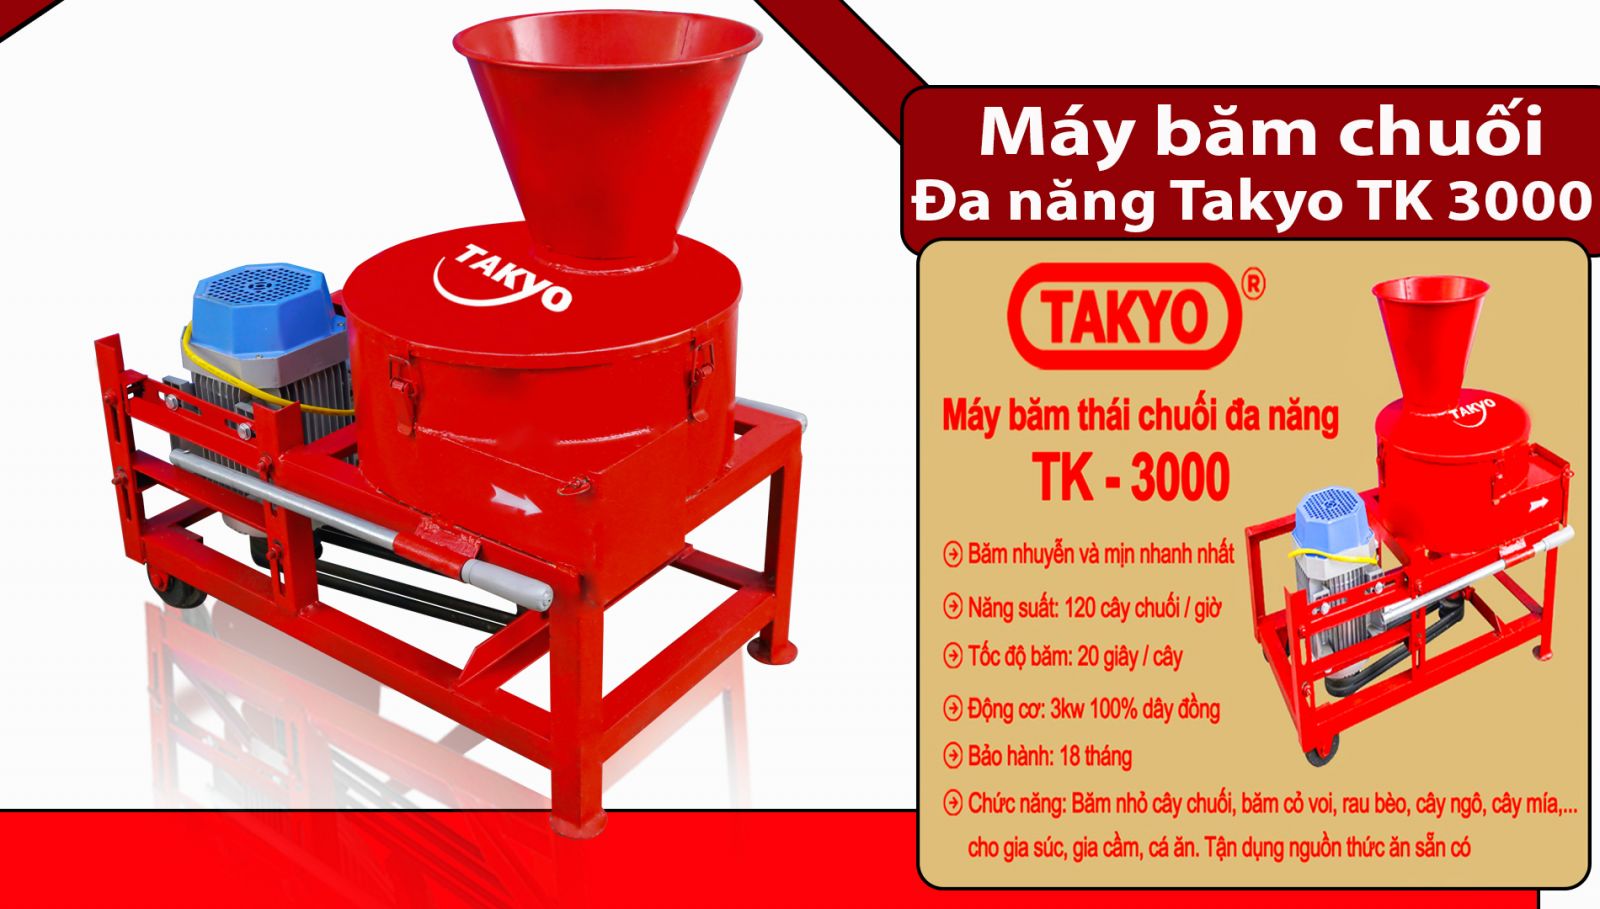 Thông số máy bặm chuối Takyo TK3000